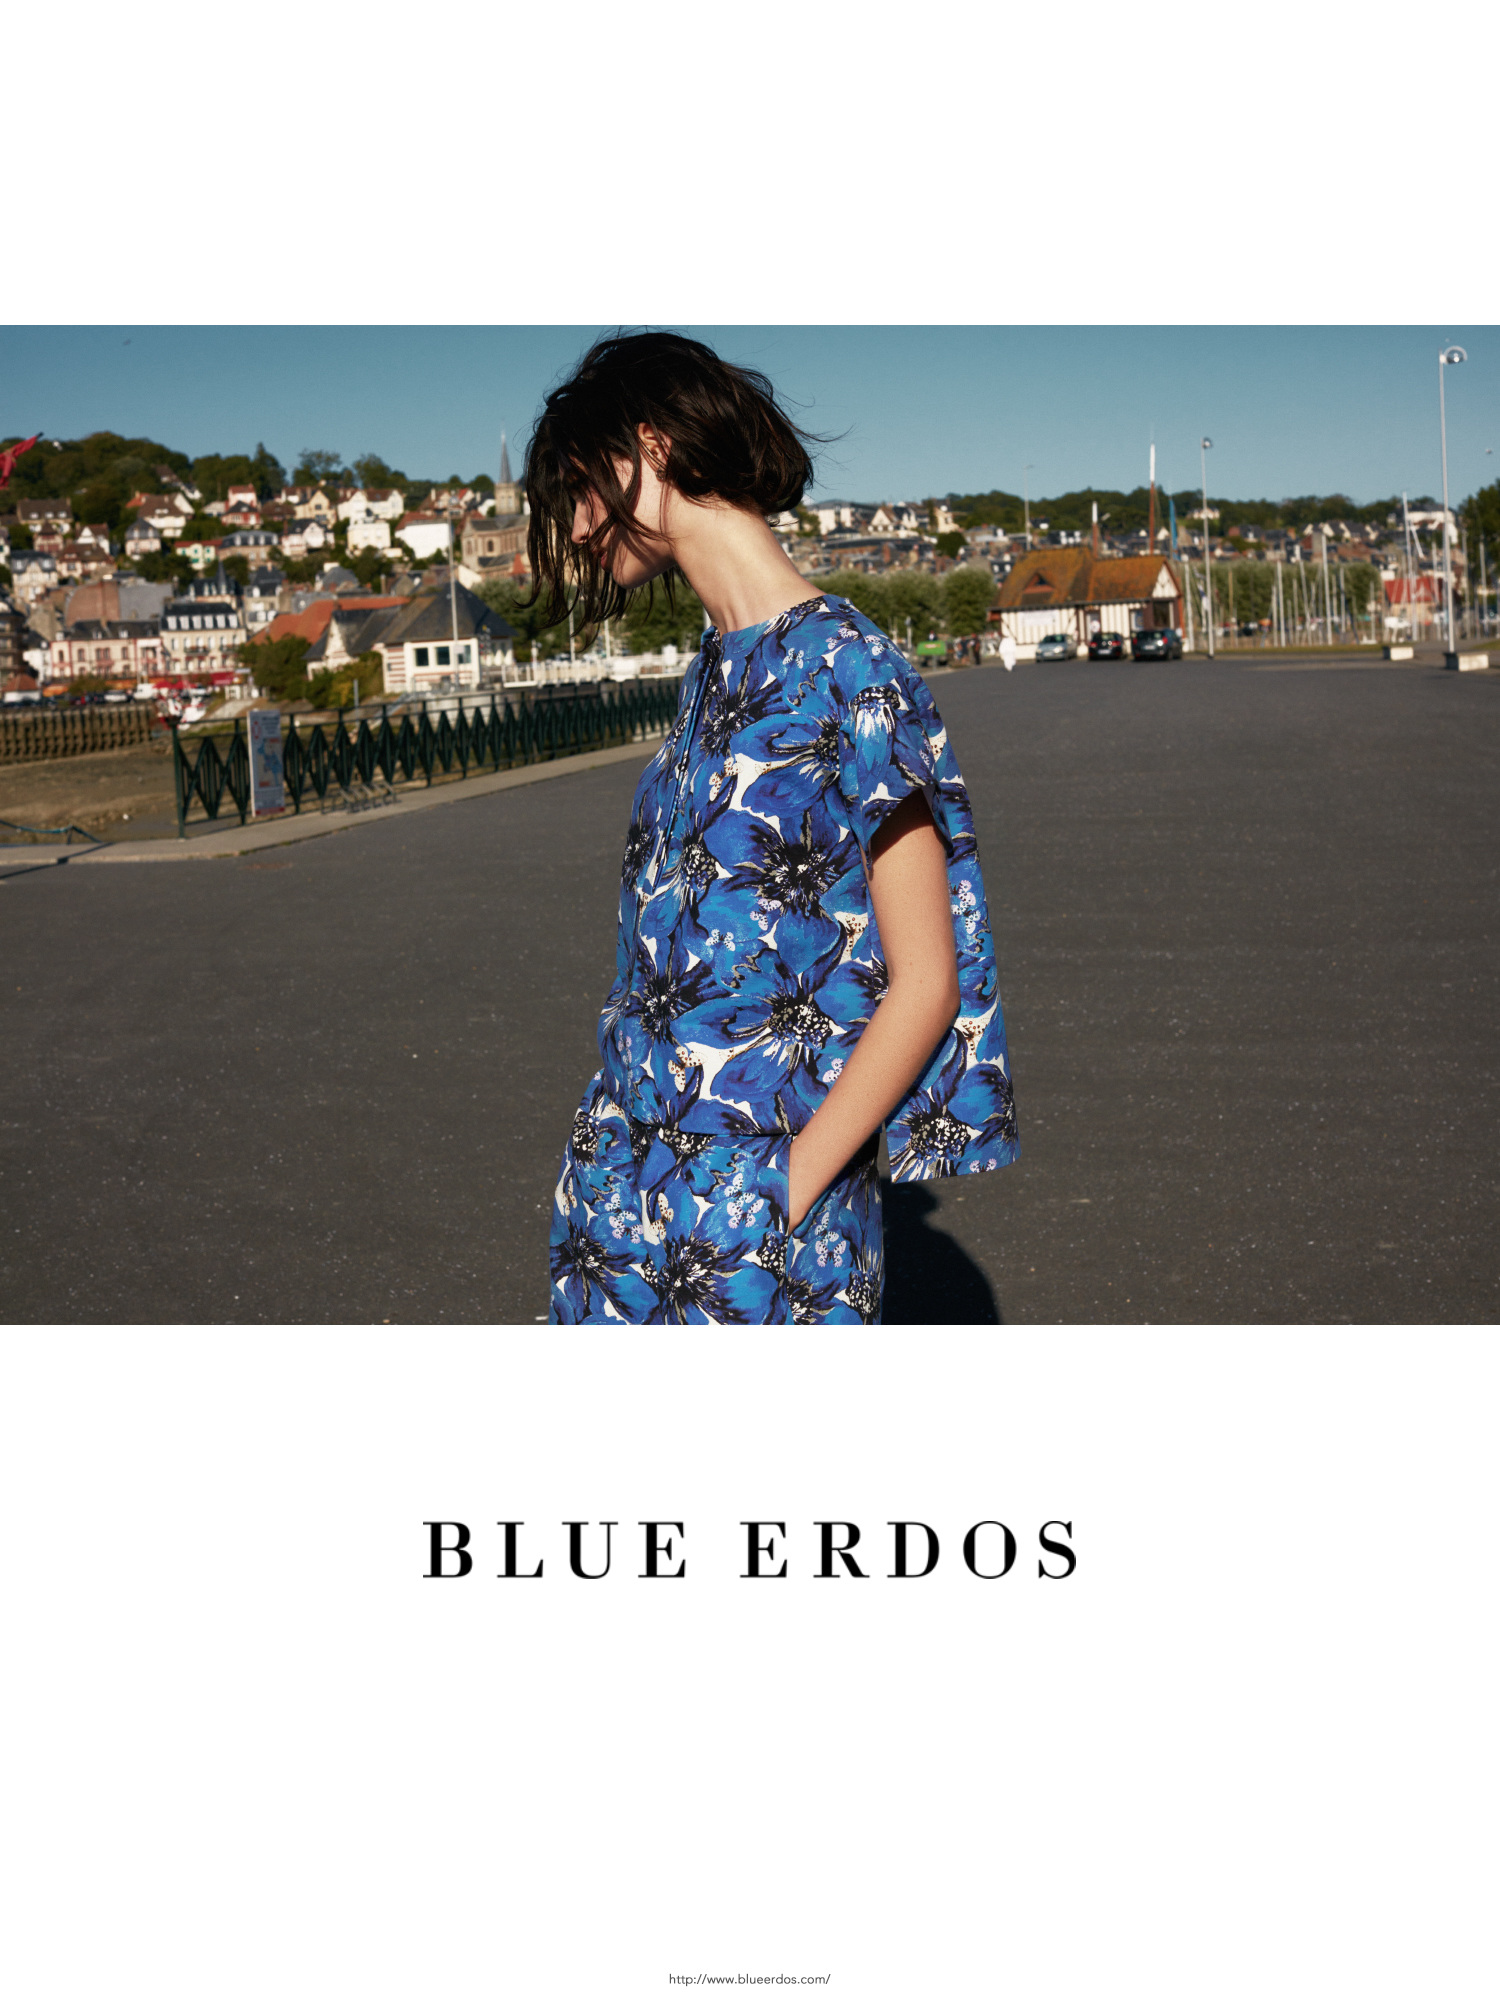 Blue Erdos 2016 Spring & Summer Campaign